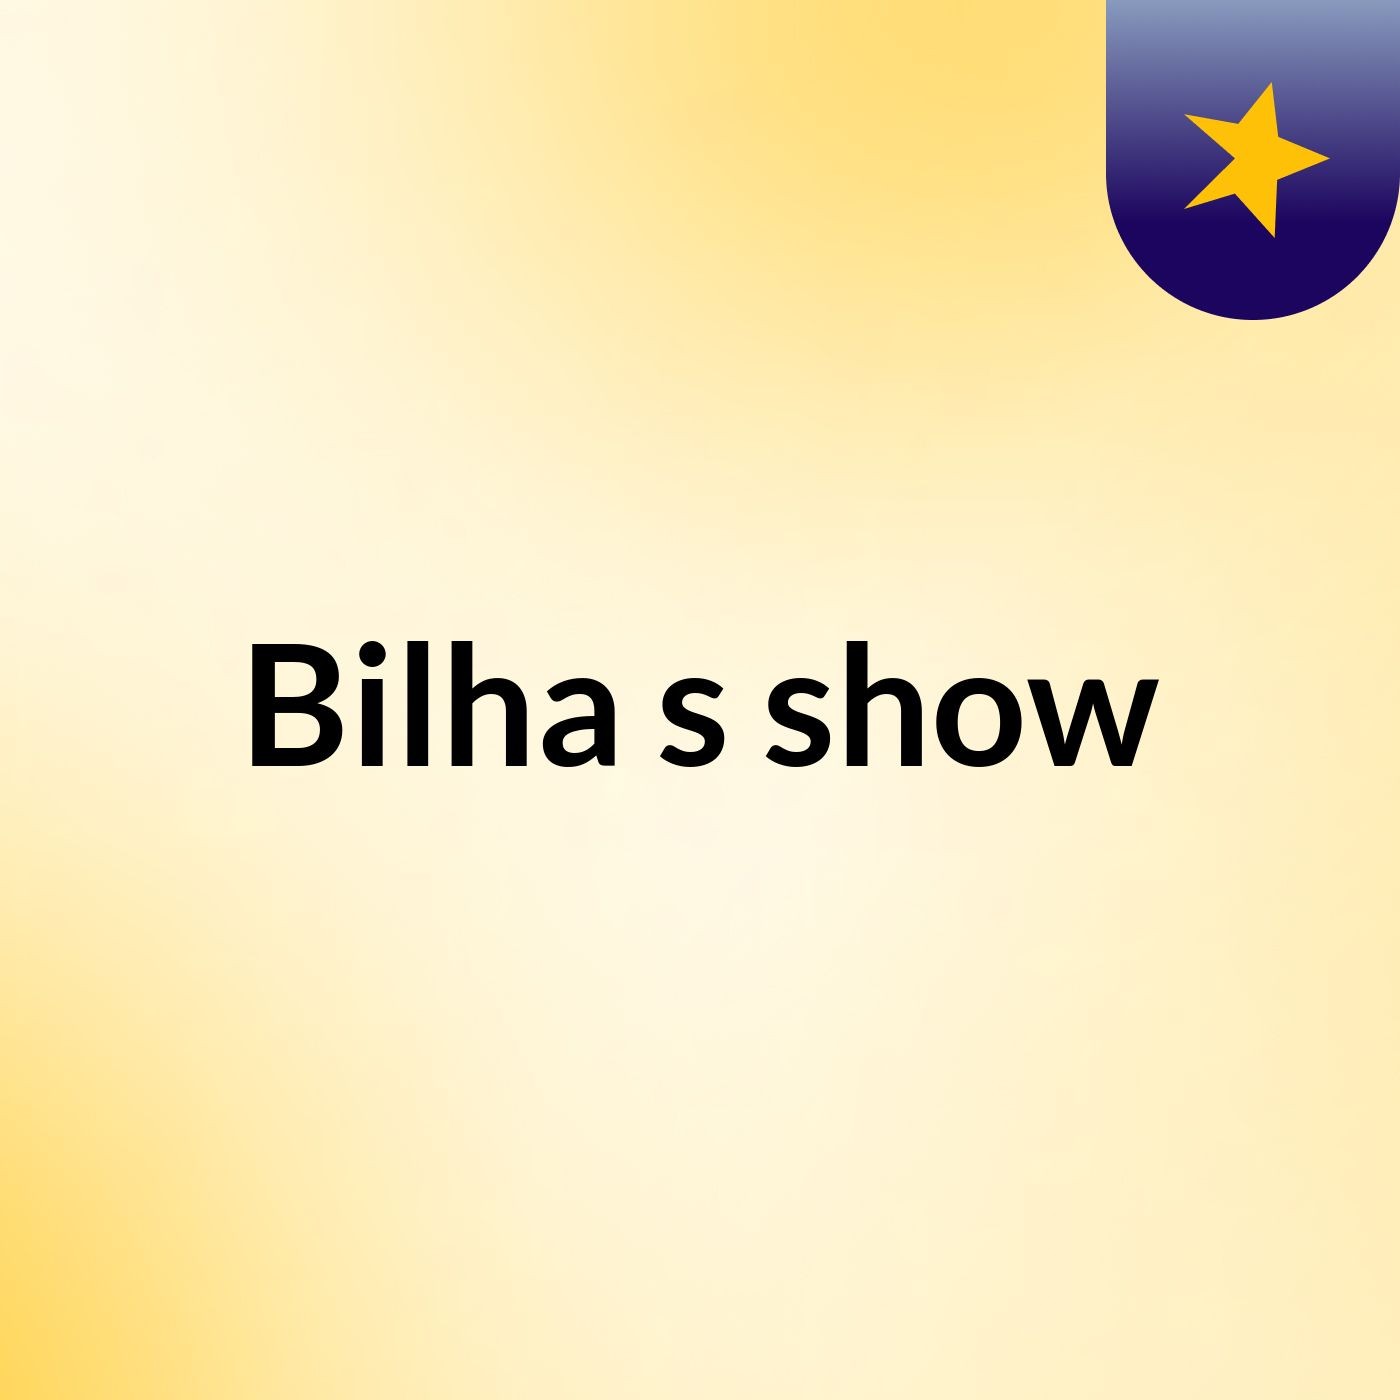 Bilha's show